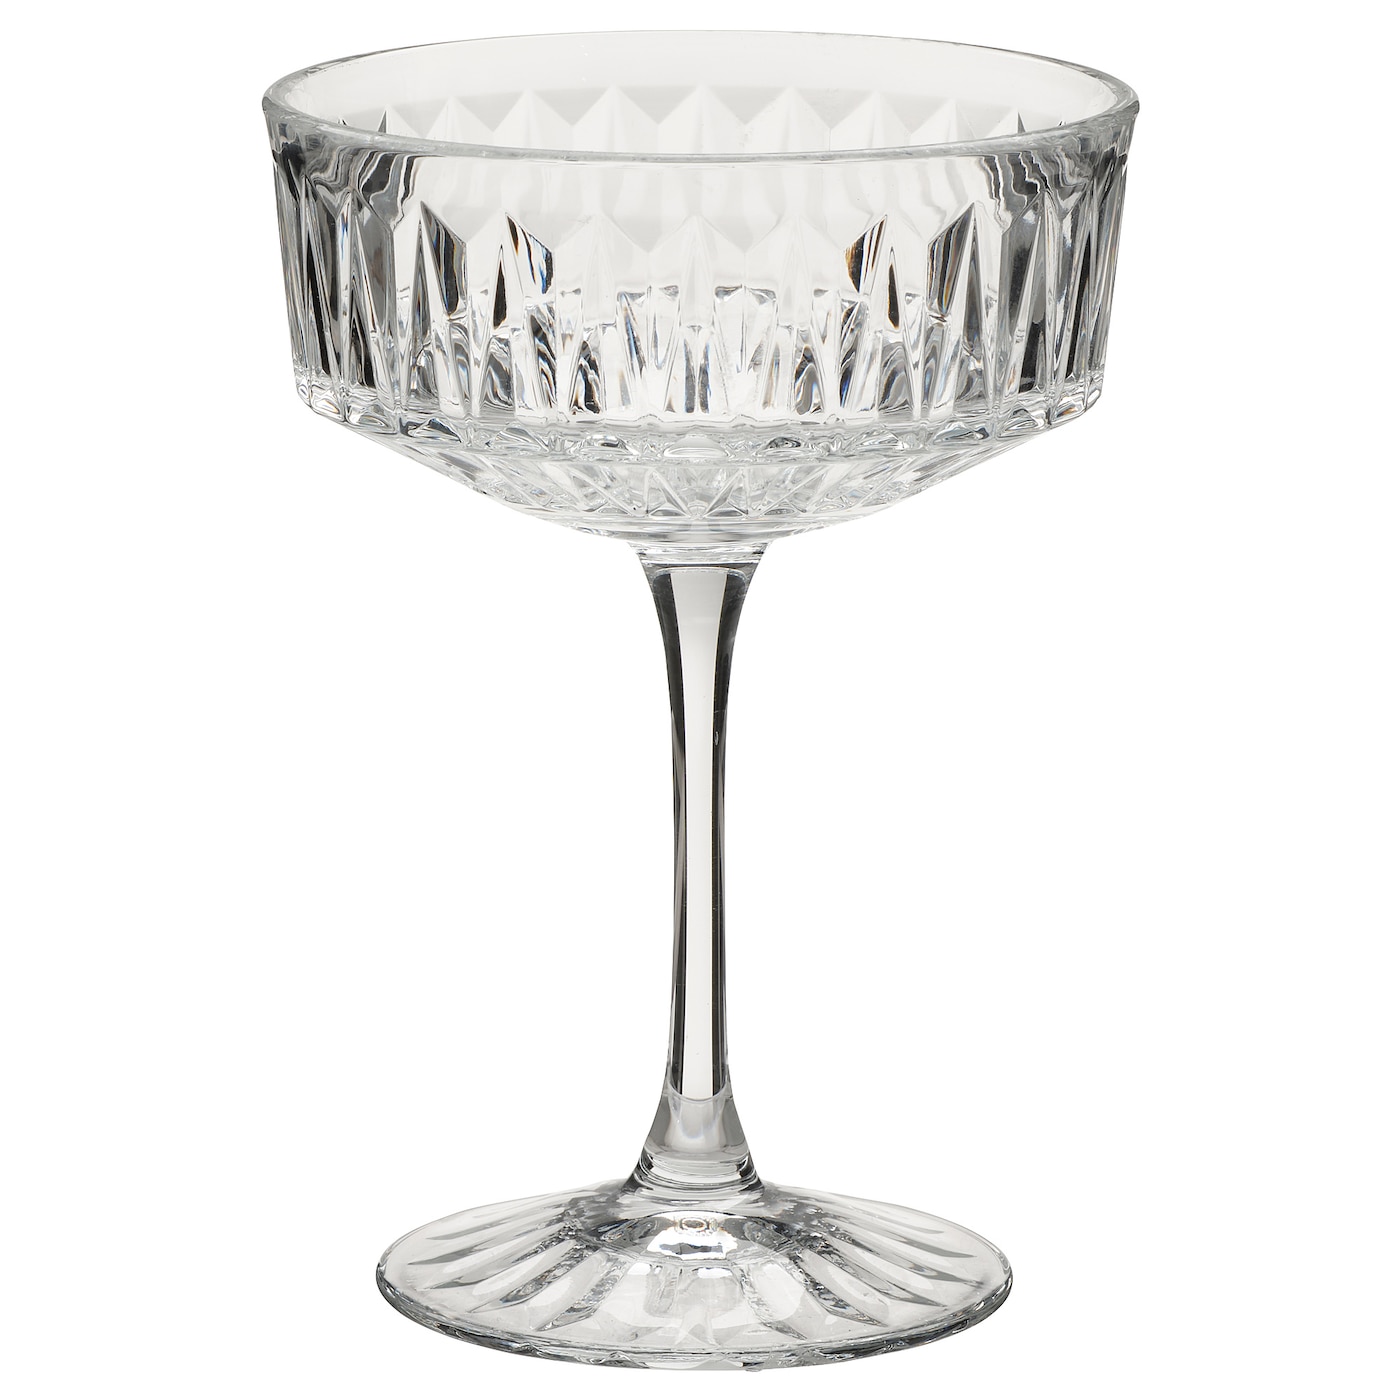 Набор бокалов для шампанского, 4 шт. - IKEA SÄLLSKAPLIG/SALLSKAPLIG, 21 мл, прозрачное стекло, СЭЛЛЬСКАПЛИГ ИКЕА